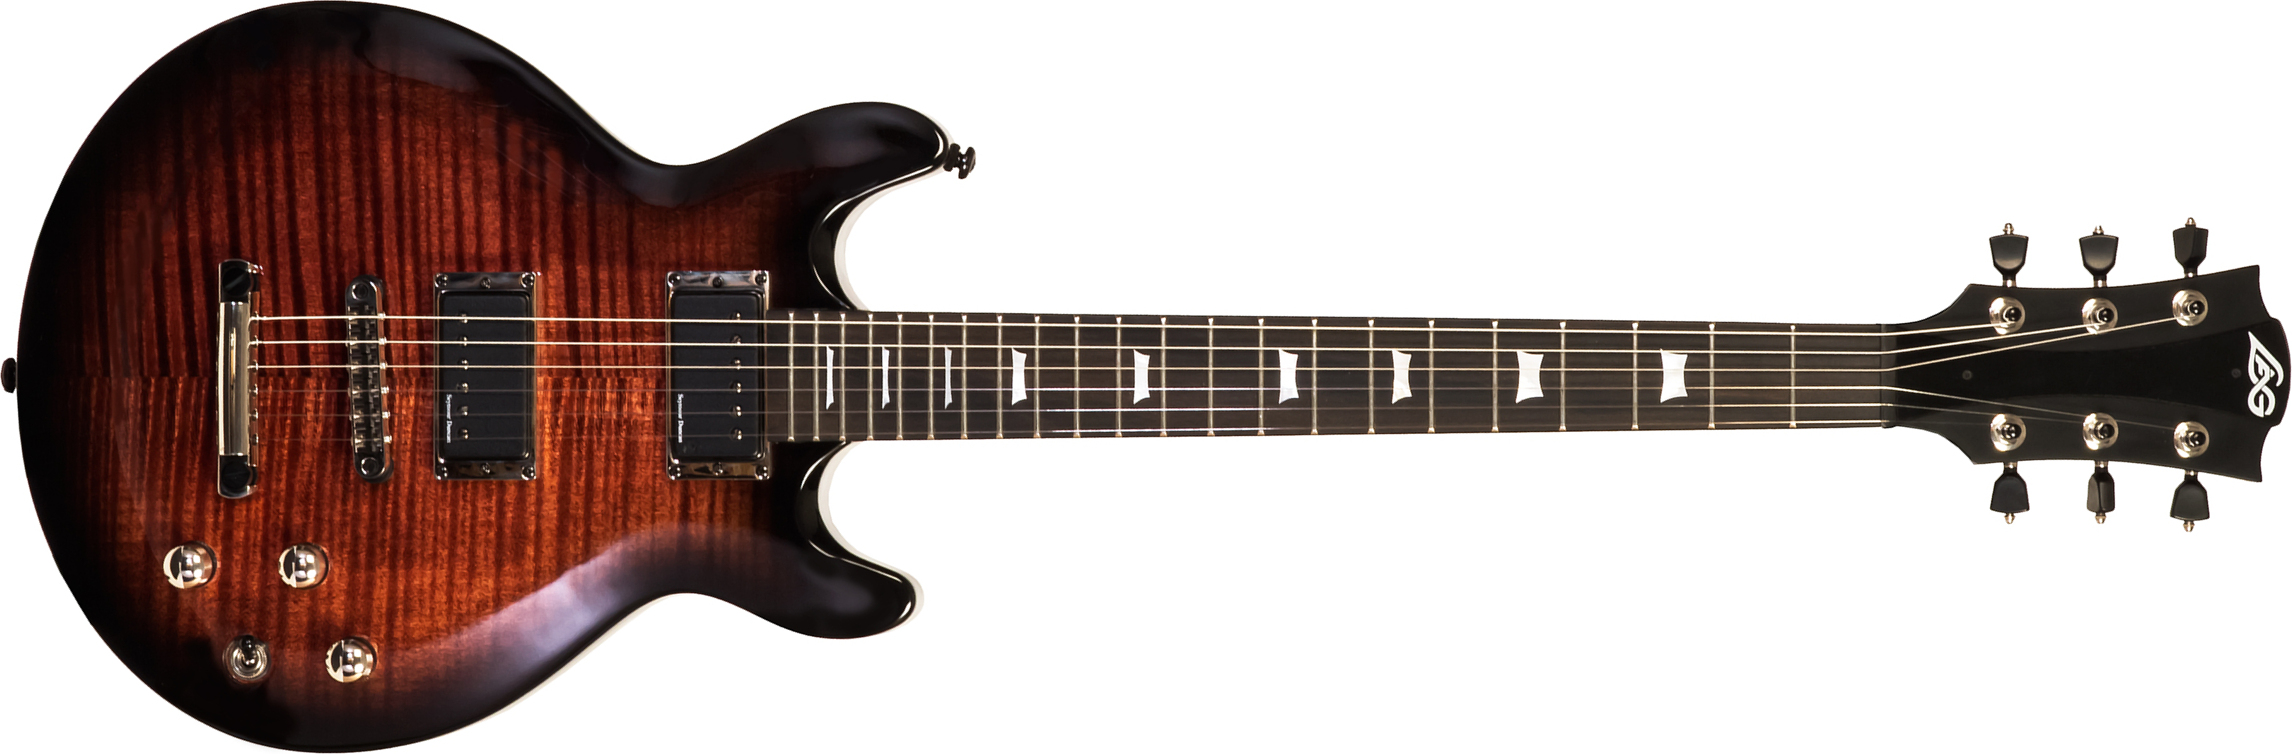 Lag Roxane R500 2h Seymour Duncan Ht Bw - Black Shadow - Guitarra eléctrica de doble corte. - Main picture